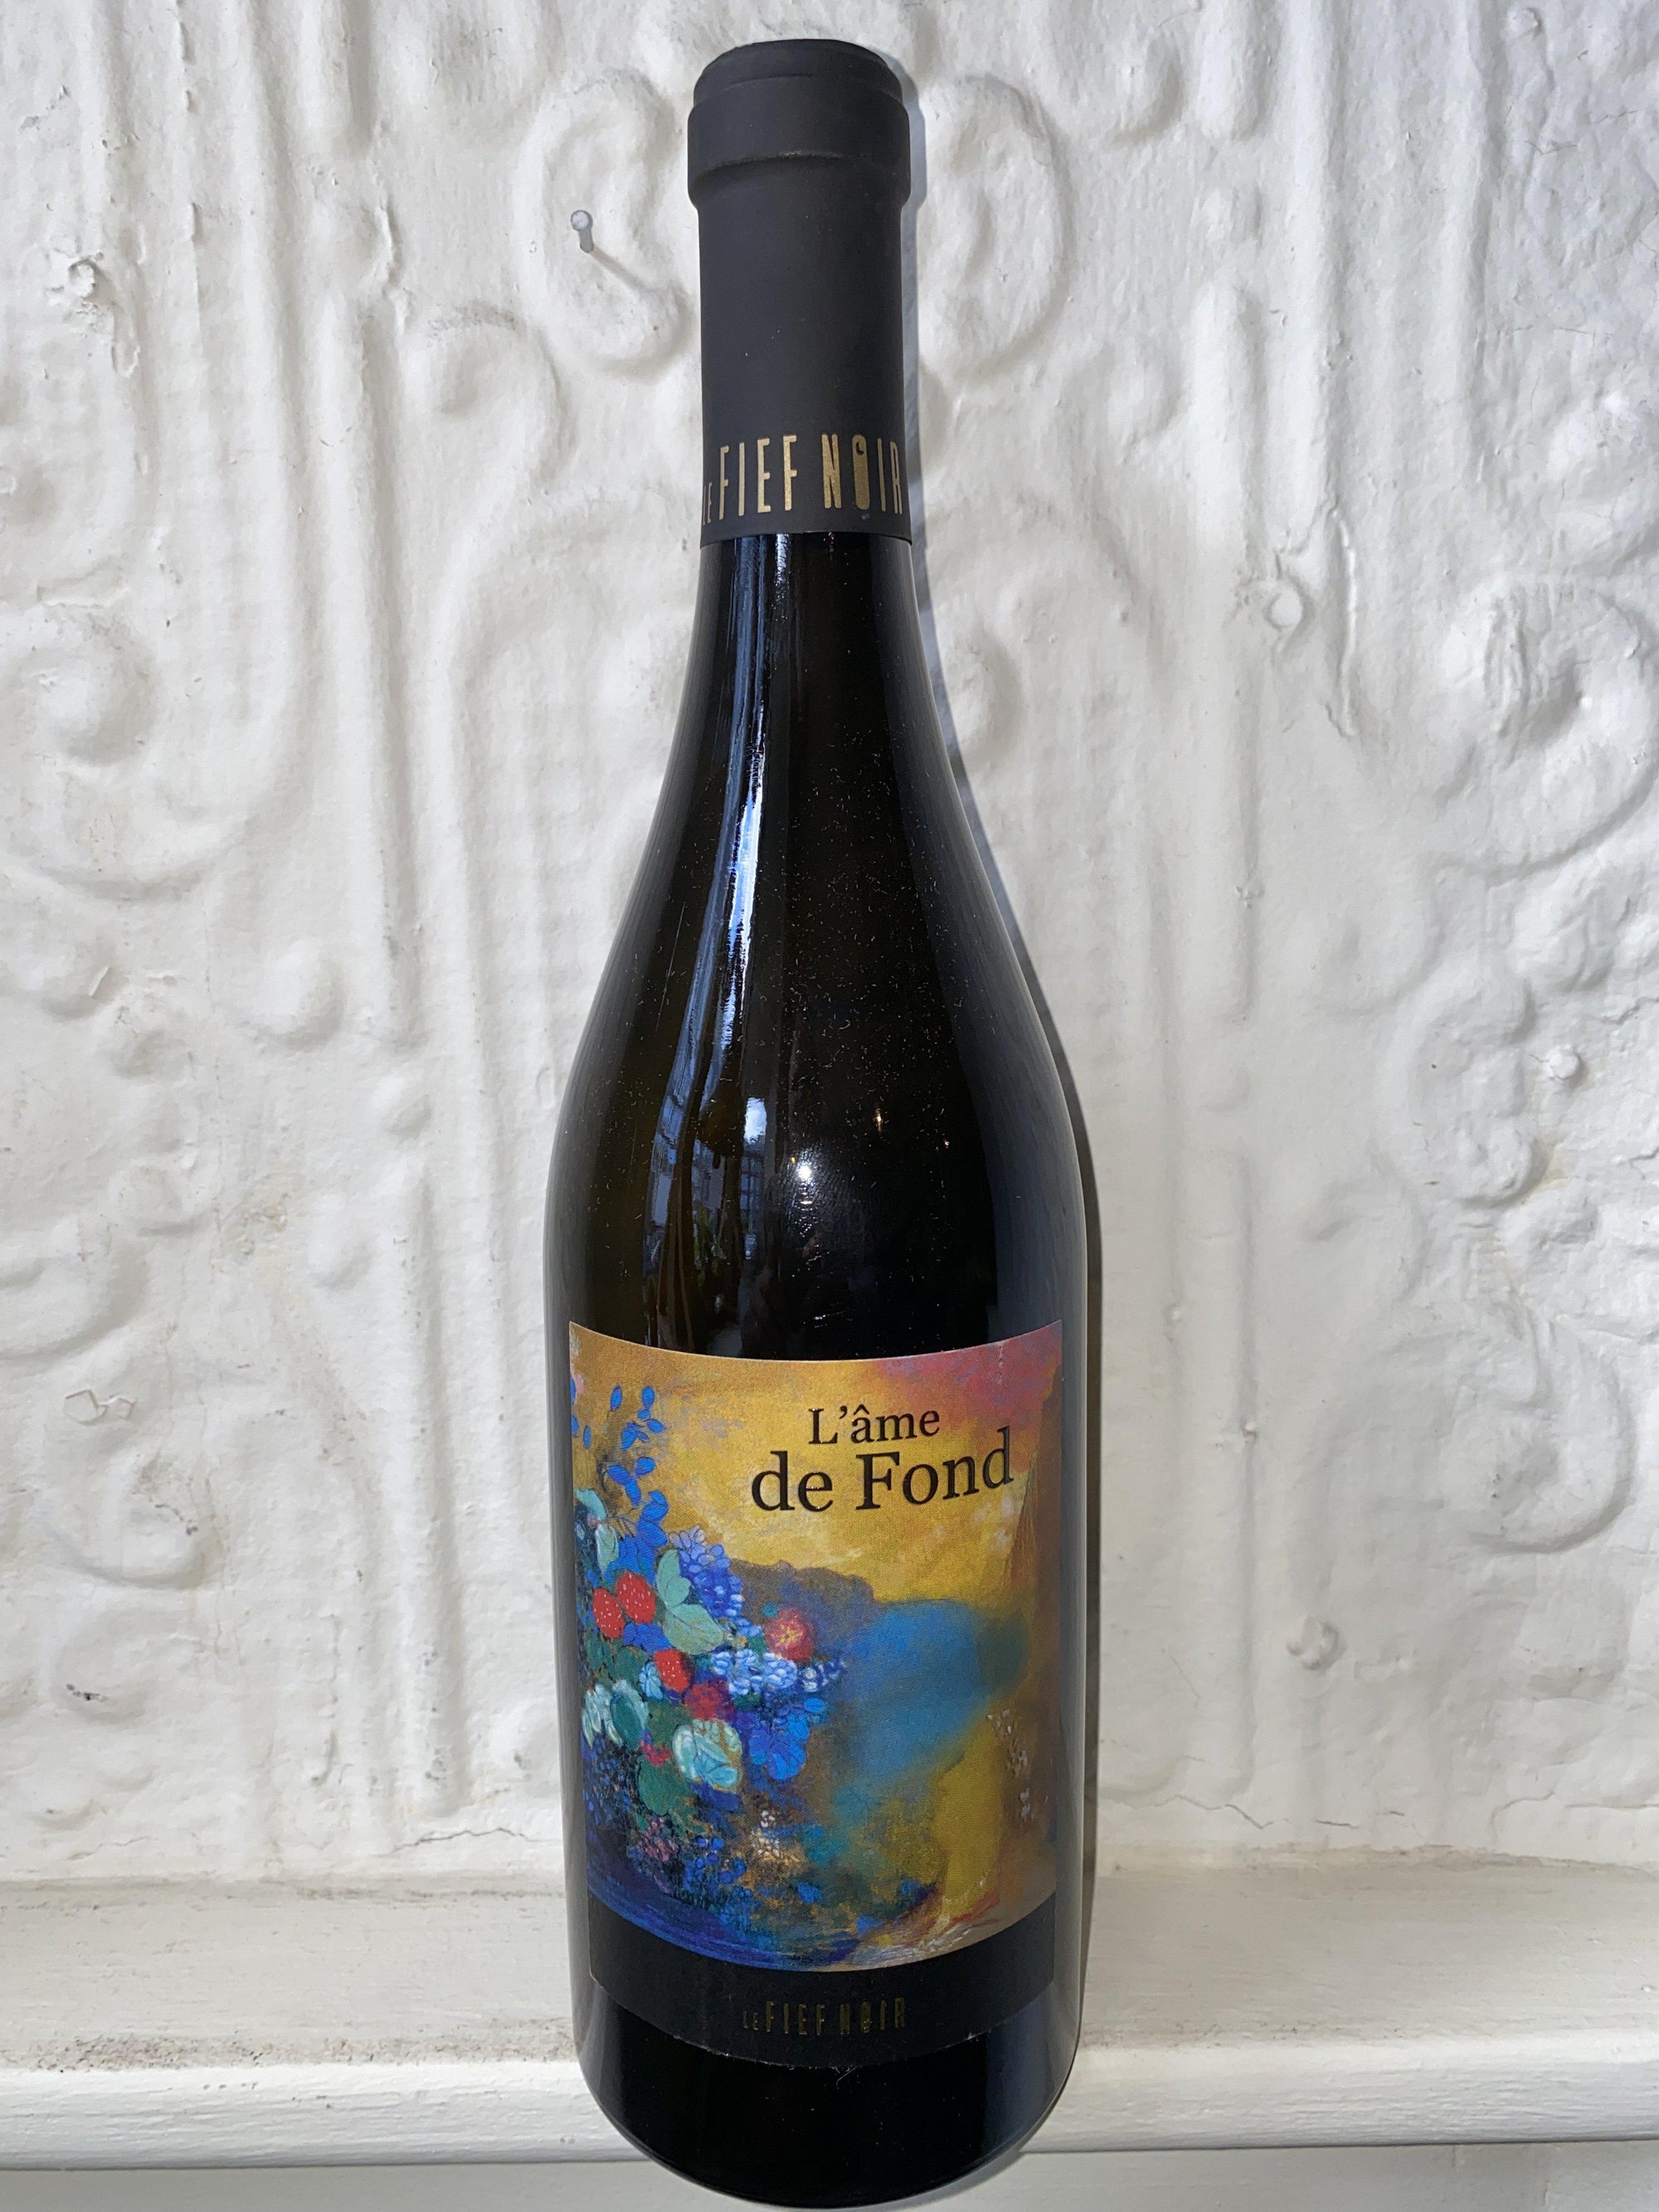 Chenin Blanc "L'Ame de Fond", Le Fief Noir 2018 (Loire Valley, France)-Wine-Bibber & Bell